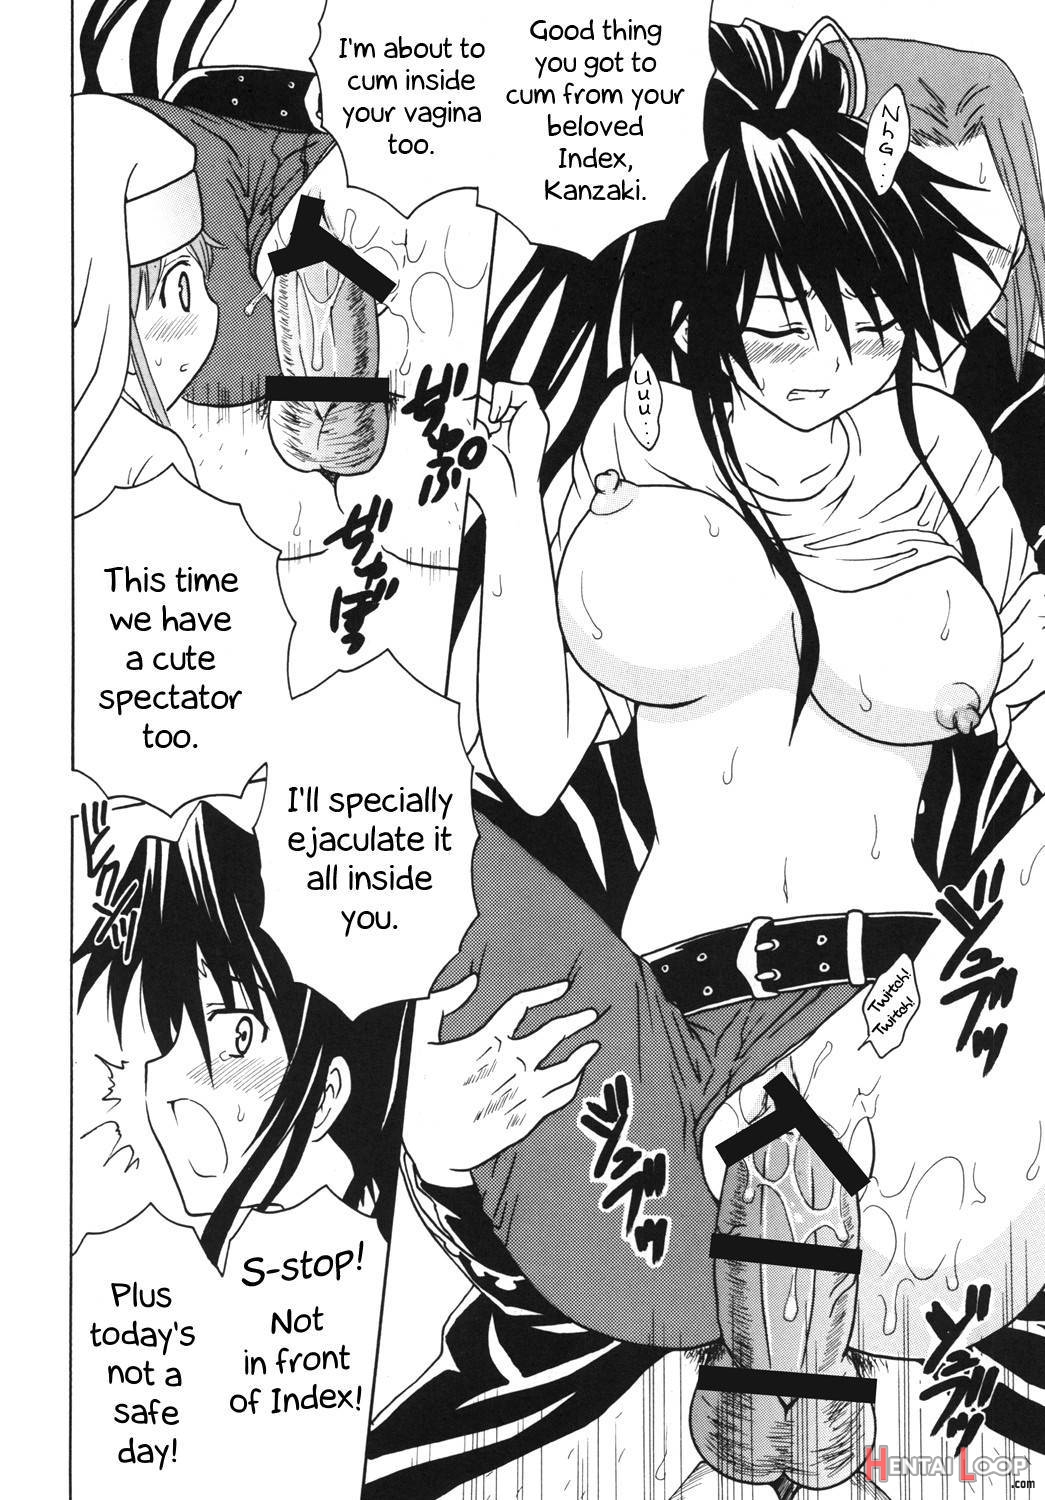 Toaru Otaku no Index #1 page 29